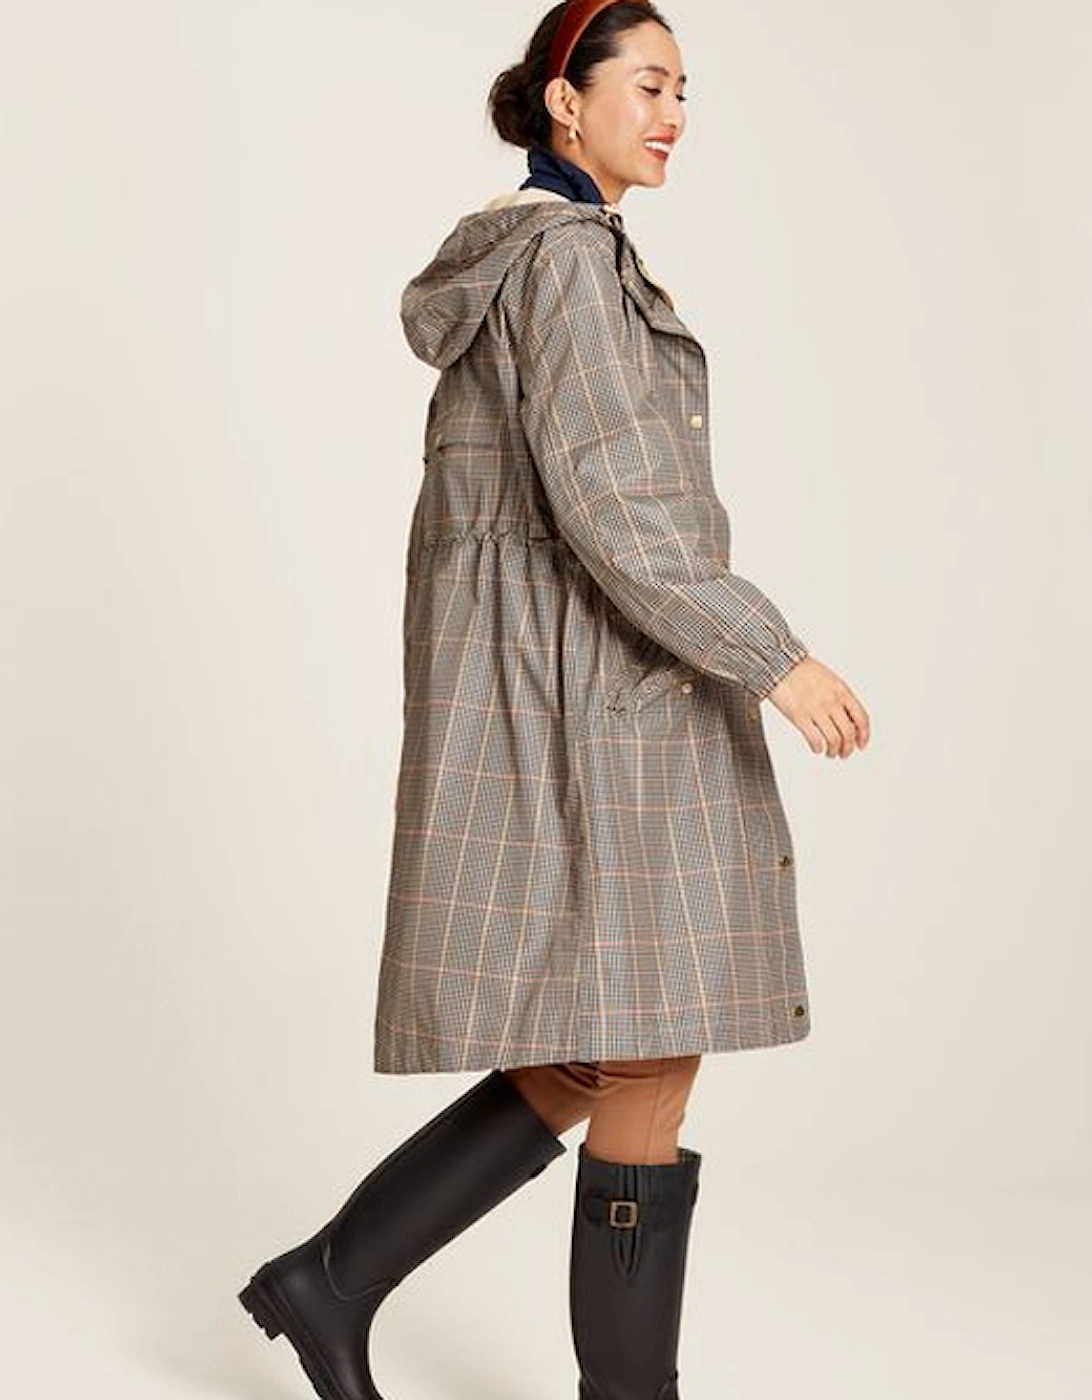 Women's Holkham Packable Waterproof Raincoat With Hood Brown